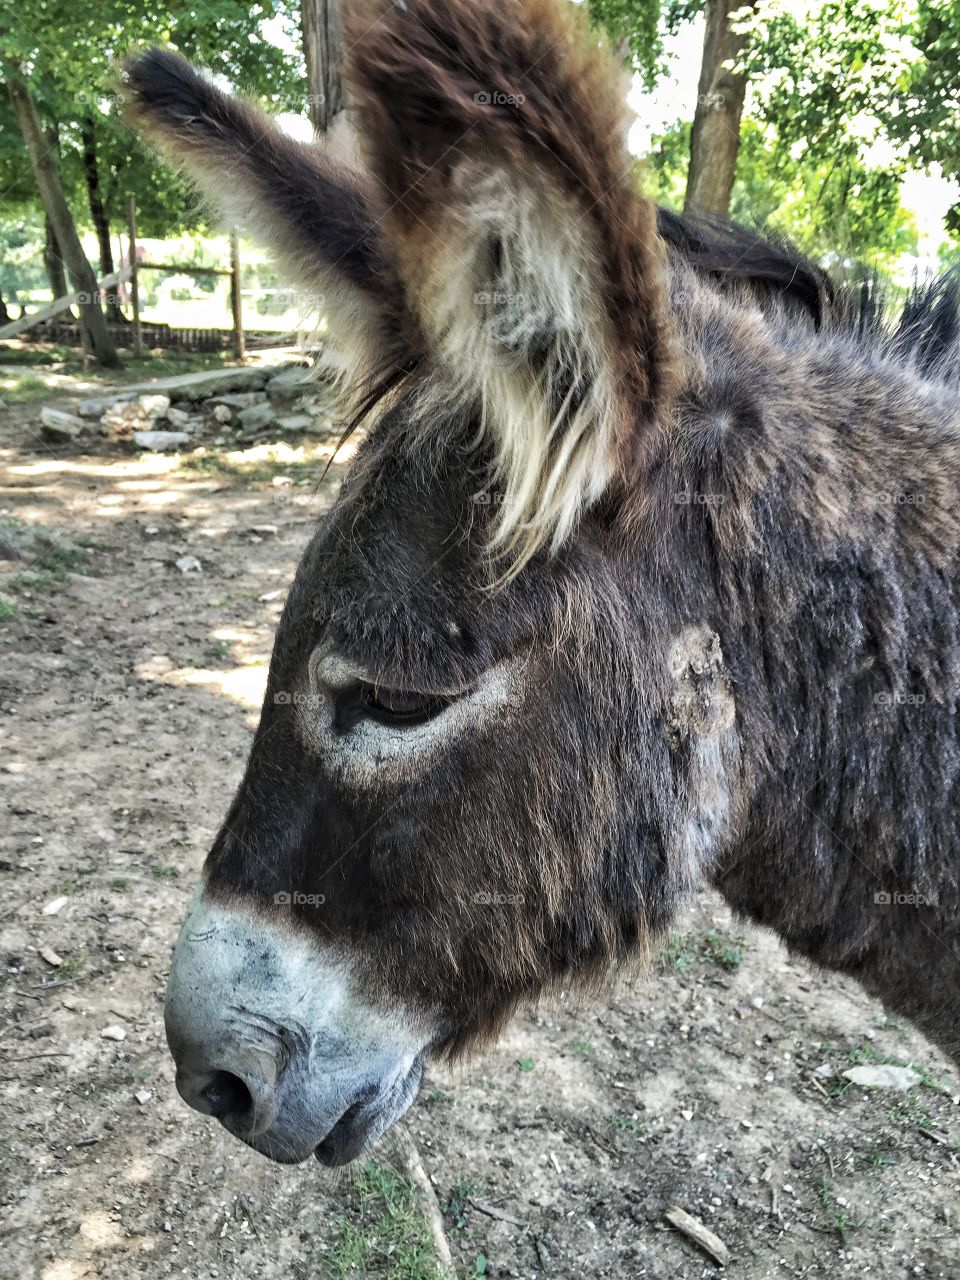 Sad Donkey